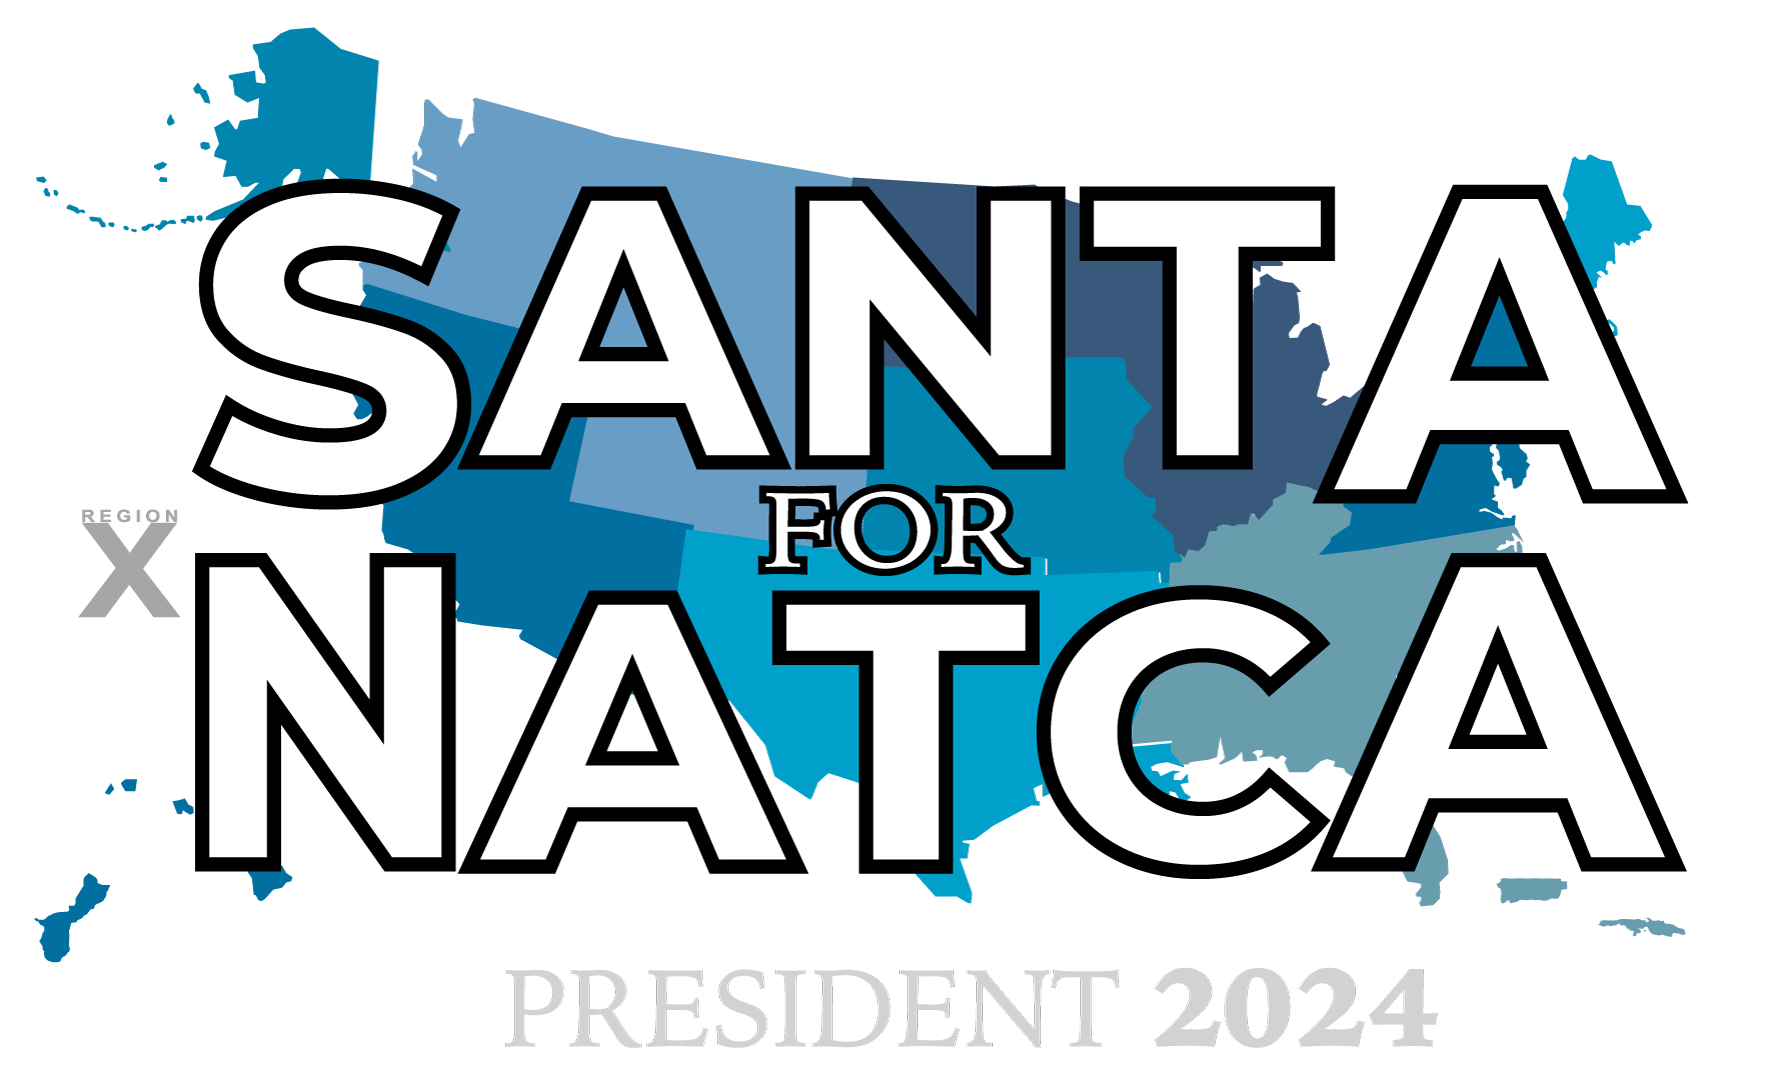 Santa for NATCA President 2024